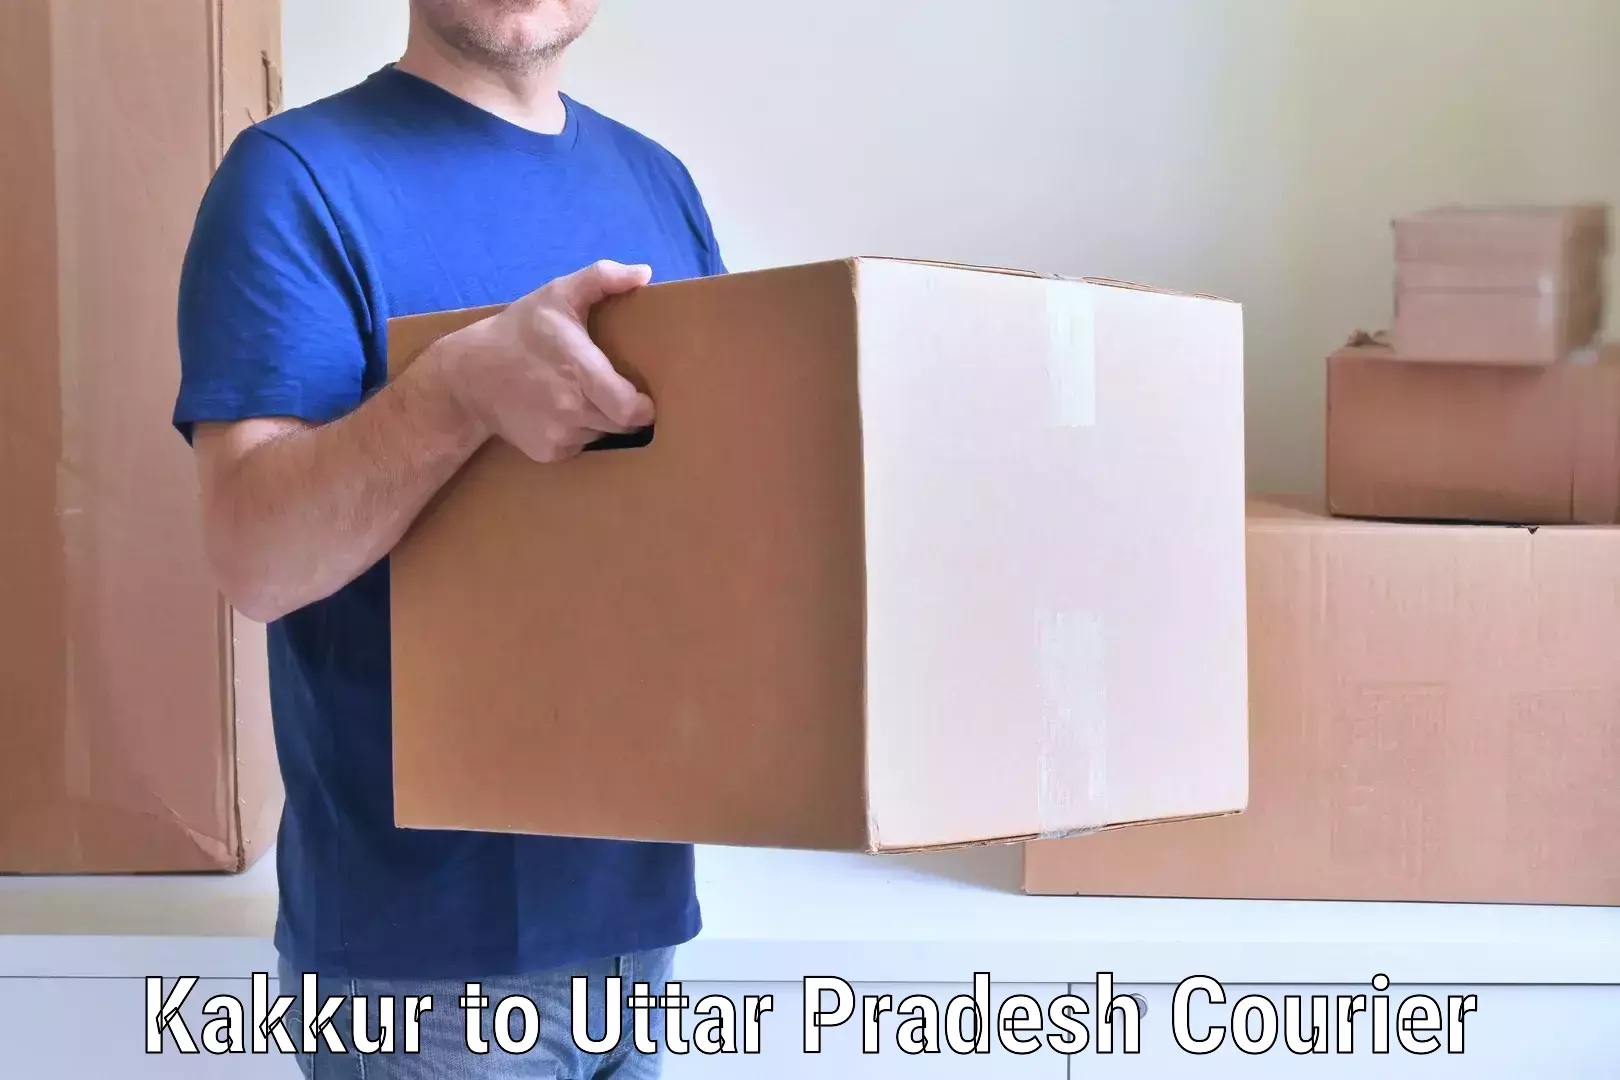 Professional furniture moving Kakkur to Ganj Dundwara